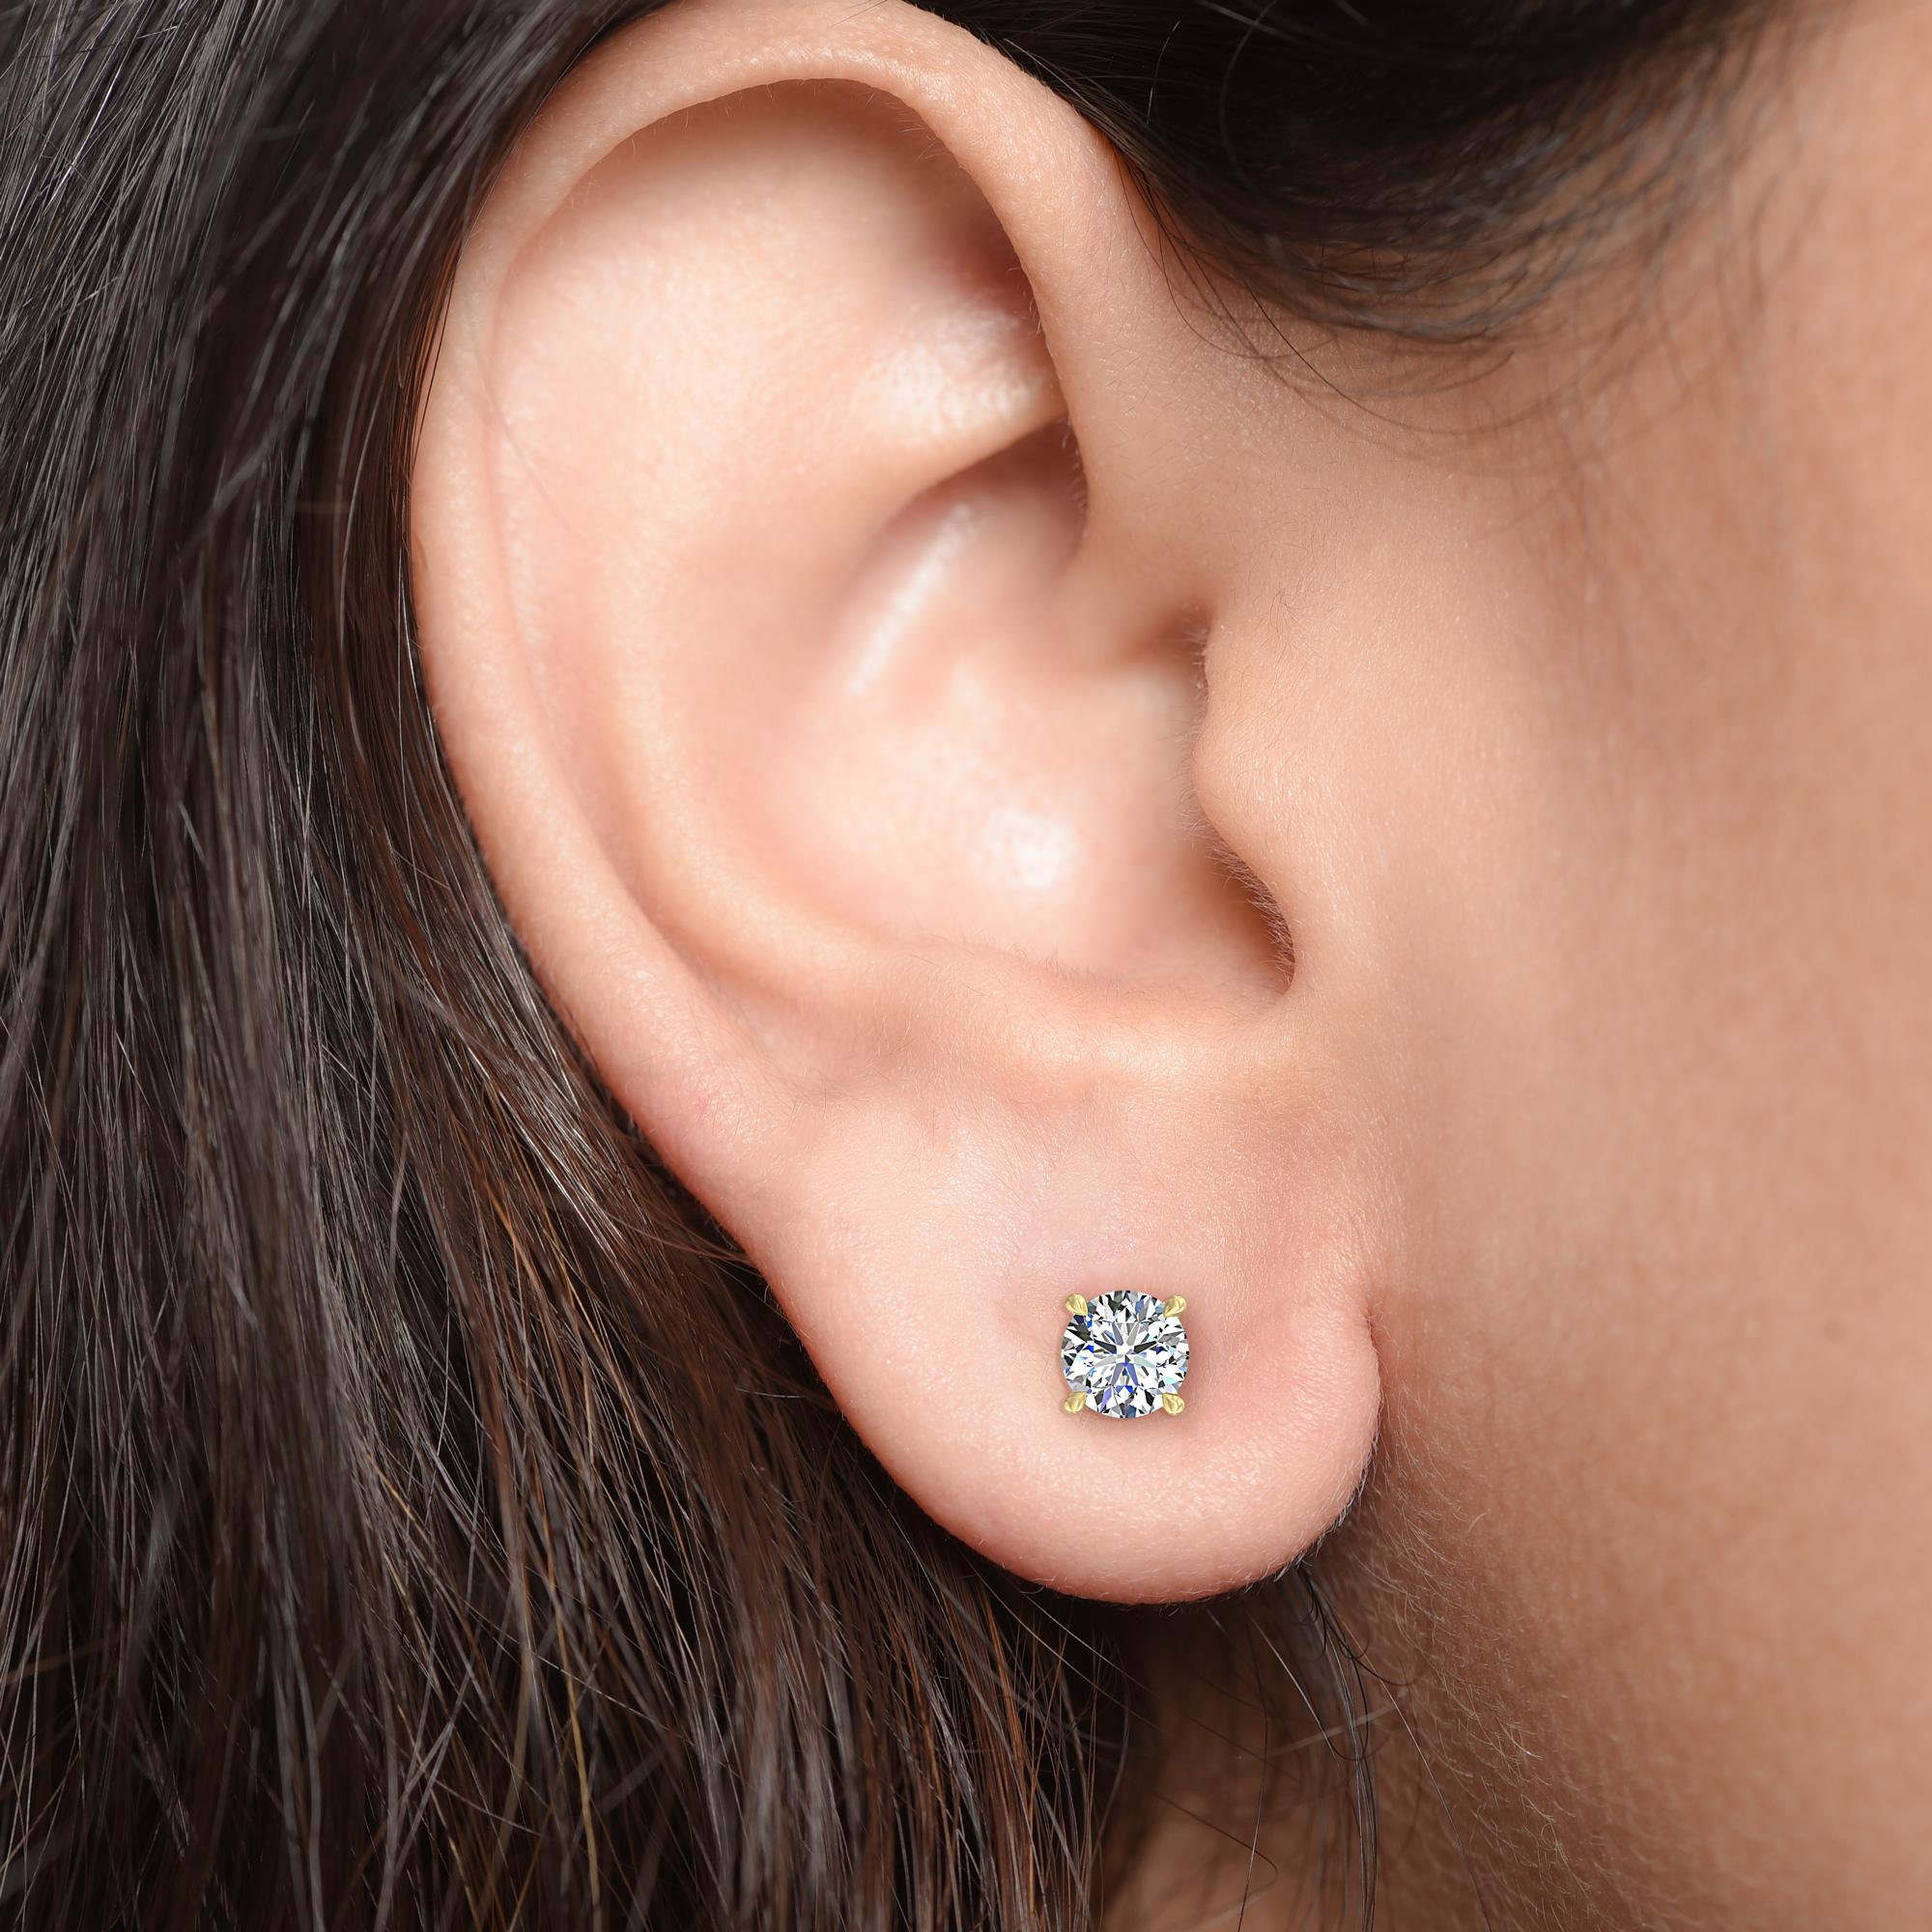 Diese klassischen GIA-zertifizierten Diamantohrstecker präsentieren ein Paar perfekt aufeinander abgestimmter Diamanten mit einem Gesamtgewicht von 0,68 Karat. Die aus 18-karätigem Gelbgold gefertigten vierzackigen Ohrringe sind auch in Weiß- und